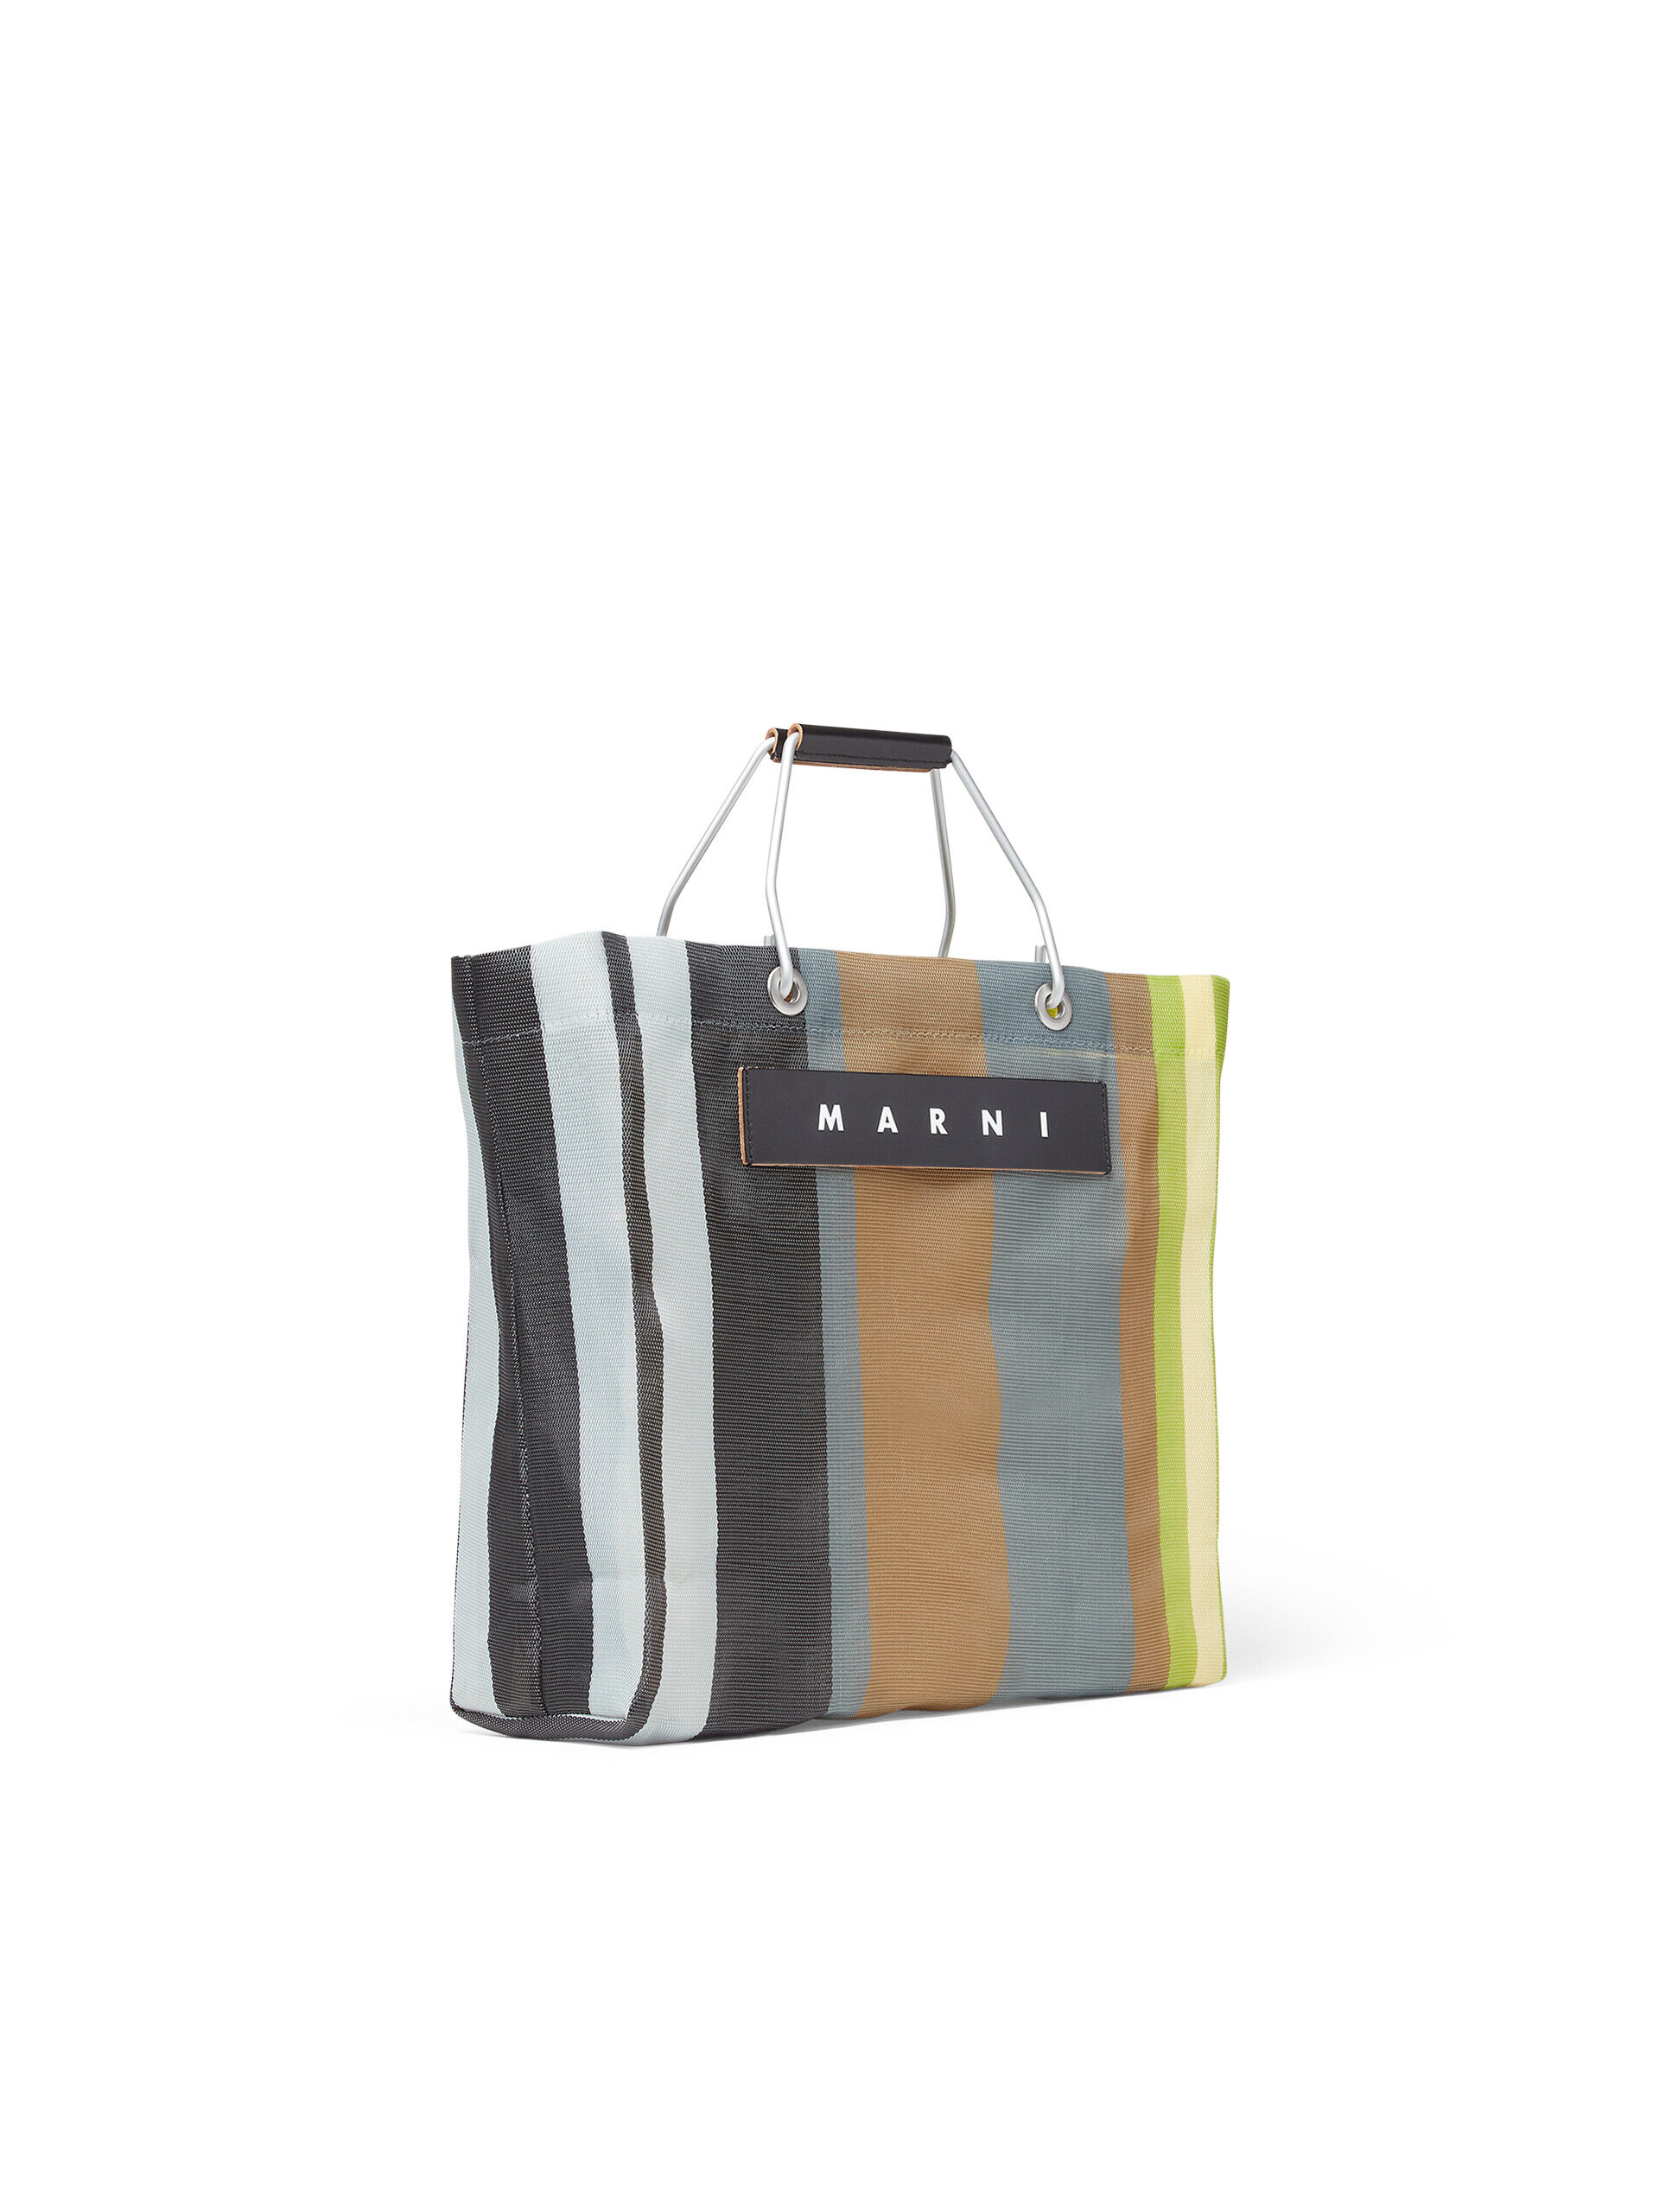 MARNI MARKET STRIPE multicolor grey bag | Marni